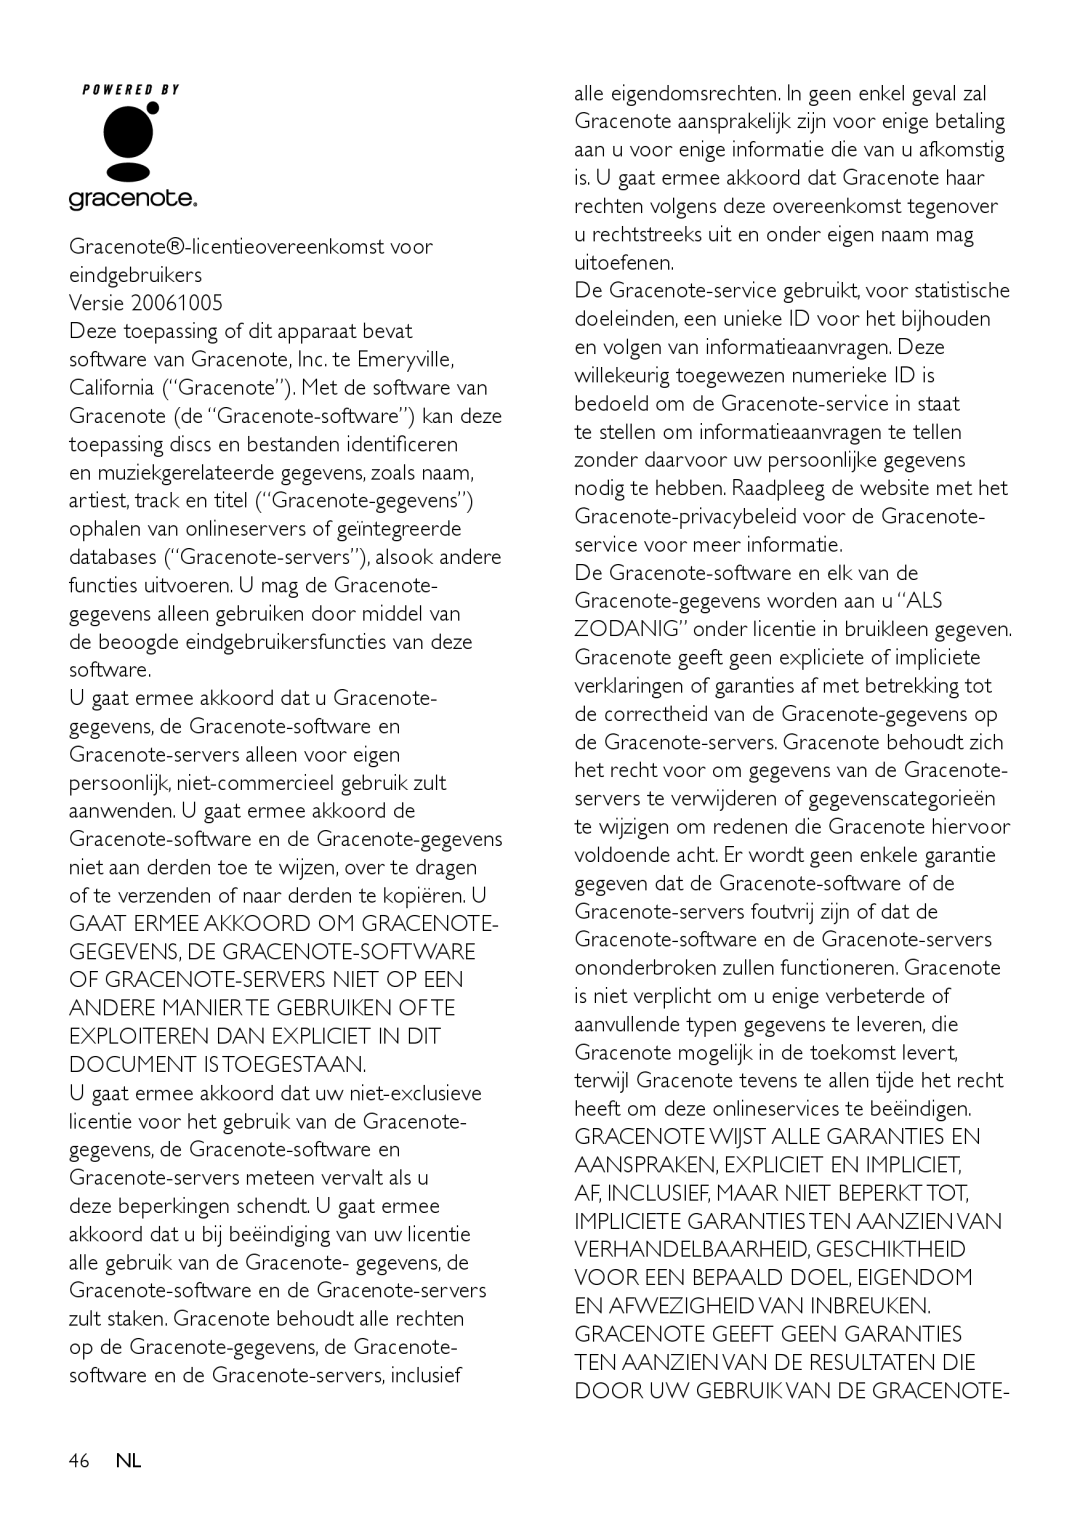 Philips MCi500H/12, MCi500H/05 manual Gracenote-licentieovereenkomstvoor eindgebruikers, Versie 